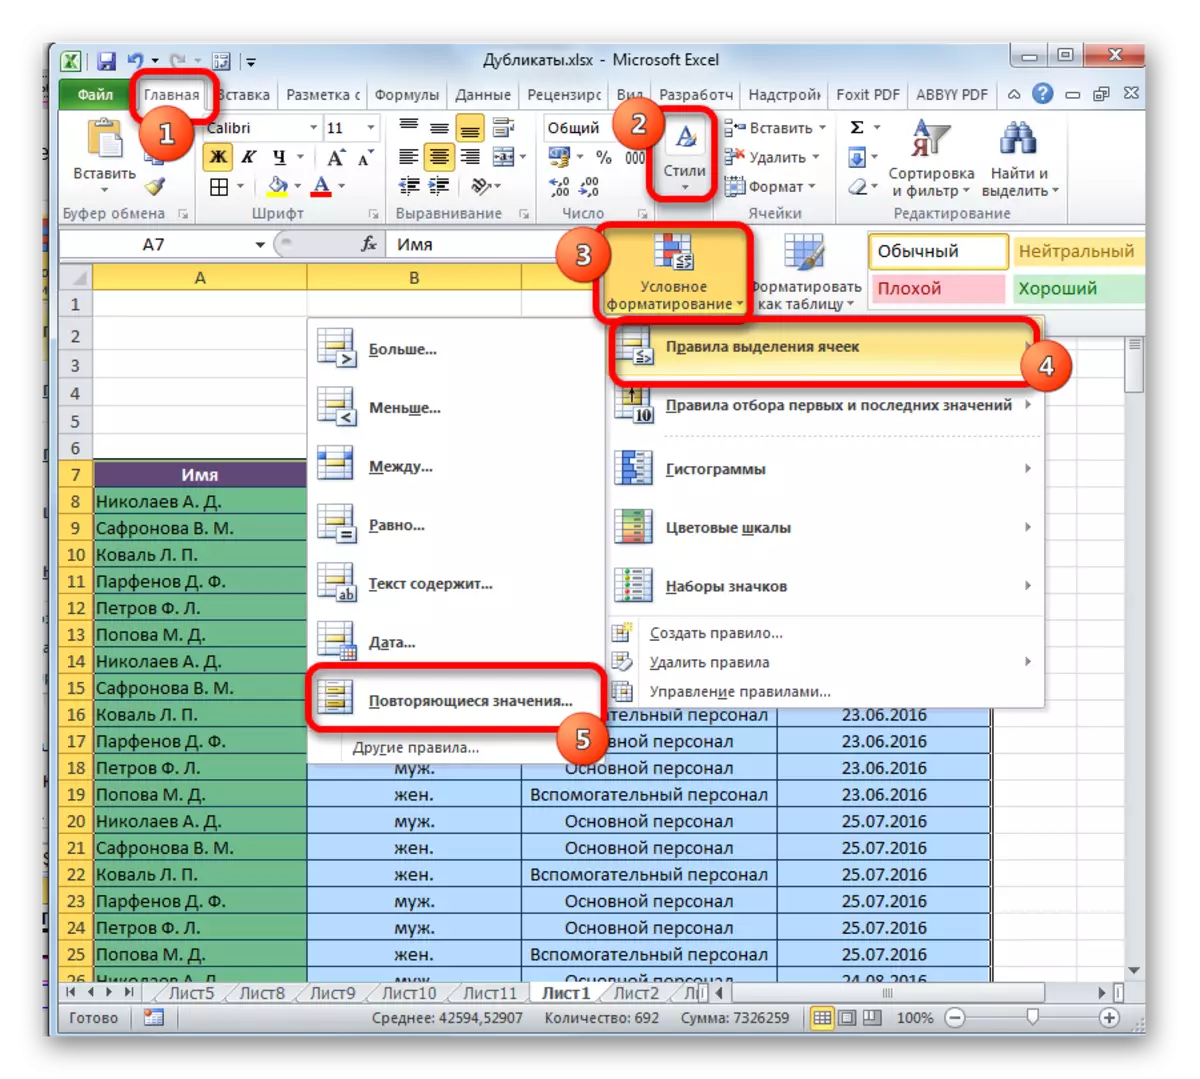 Iwwergang zu Konditiounsformatéierung am Microsoft Excel